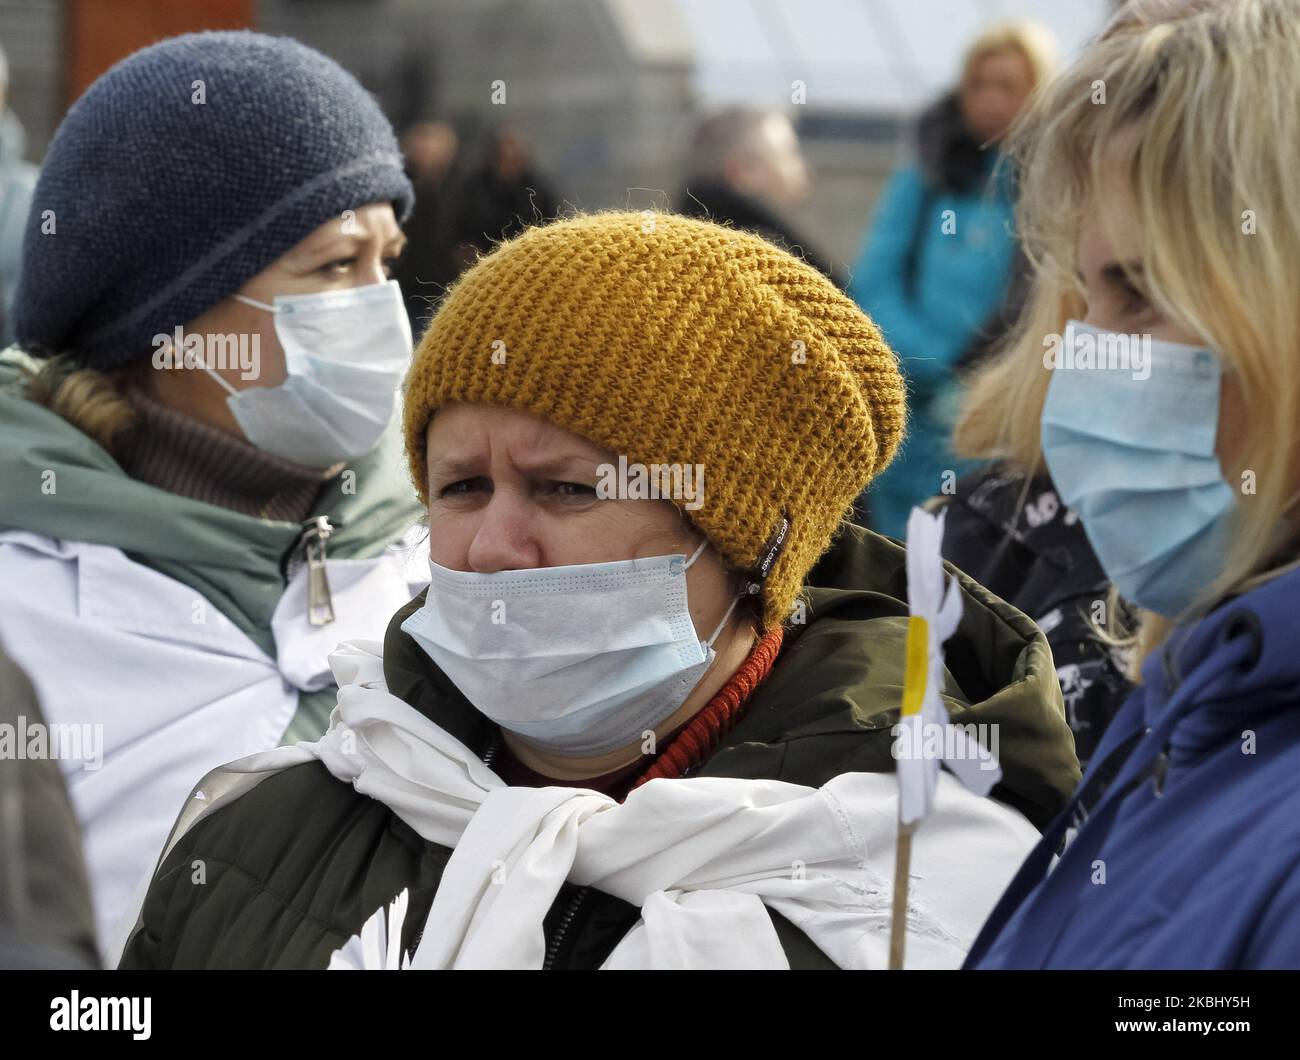 Ukrainische medizinische Mitarbeiter mit Gesichtsmasken nehmen am 26. Februar 2020 an einer Kundgebung gegen die Gesundheitsreform auf dem Unabhängigkeitsplatz in Kiew, Ukraine, Teil. Laut lokalen Medien hielten ukrainische Krankenschwestern, Ärzte und andere Beschäftigte des Gesundheitswesens ihre Kundgebung mit der Forderung nach besseren Löhnen und Arbeitsbedingungen sowie gegen die Schließung von medizinischen Einrichtungen ab. (Foto von STR/NurPhoto) Stockfoto